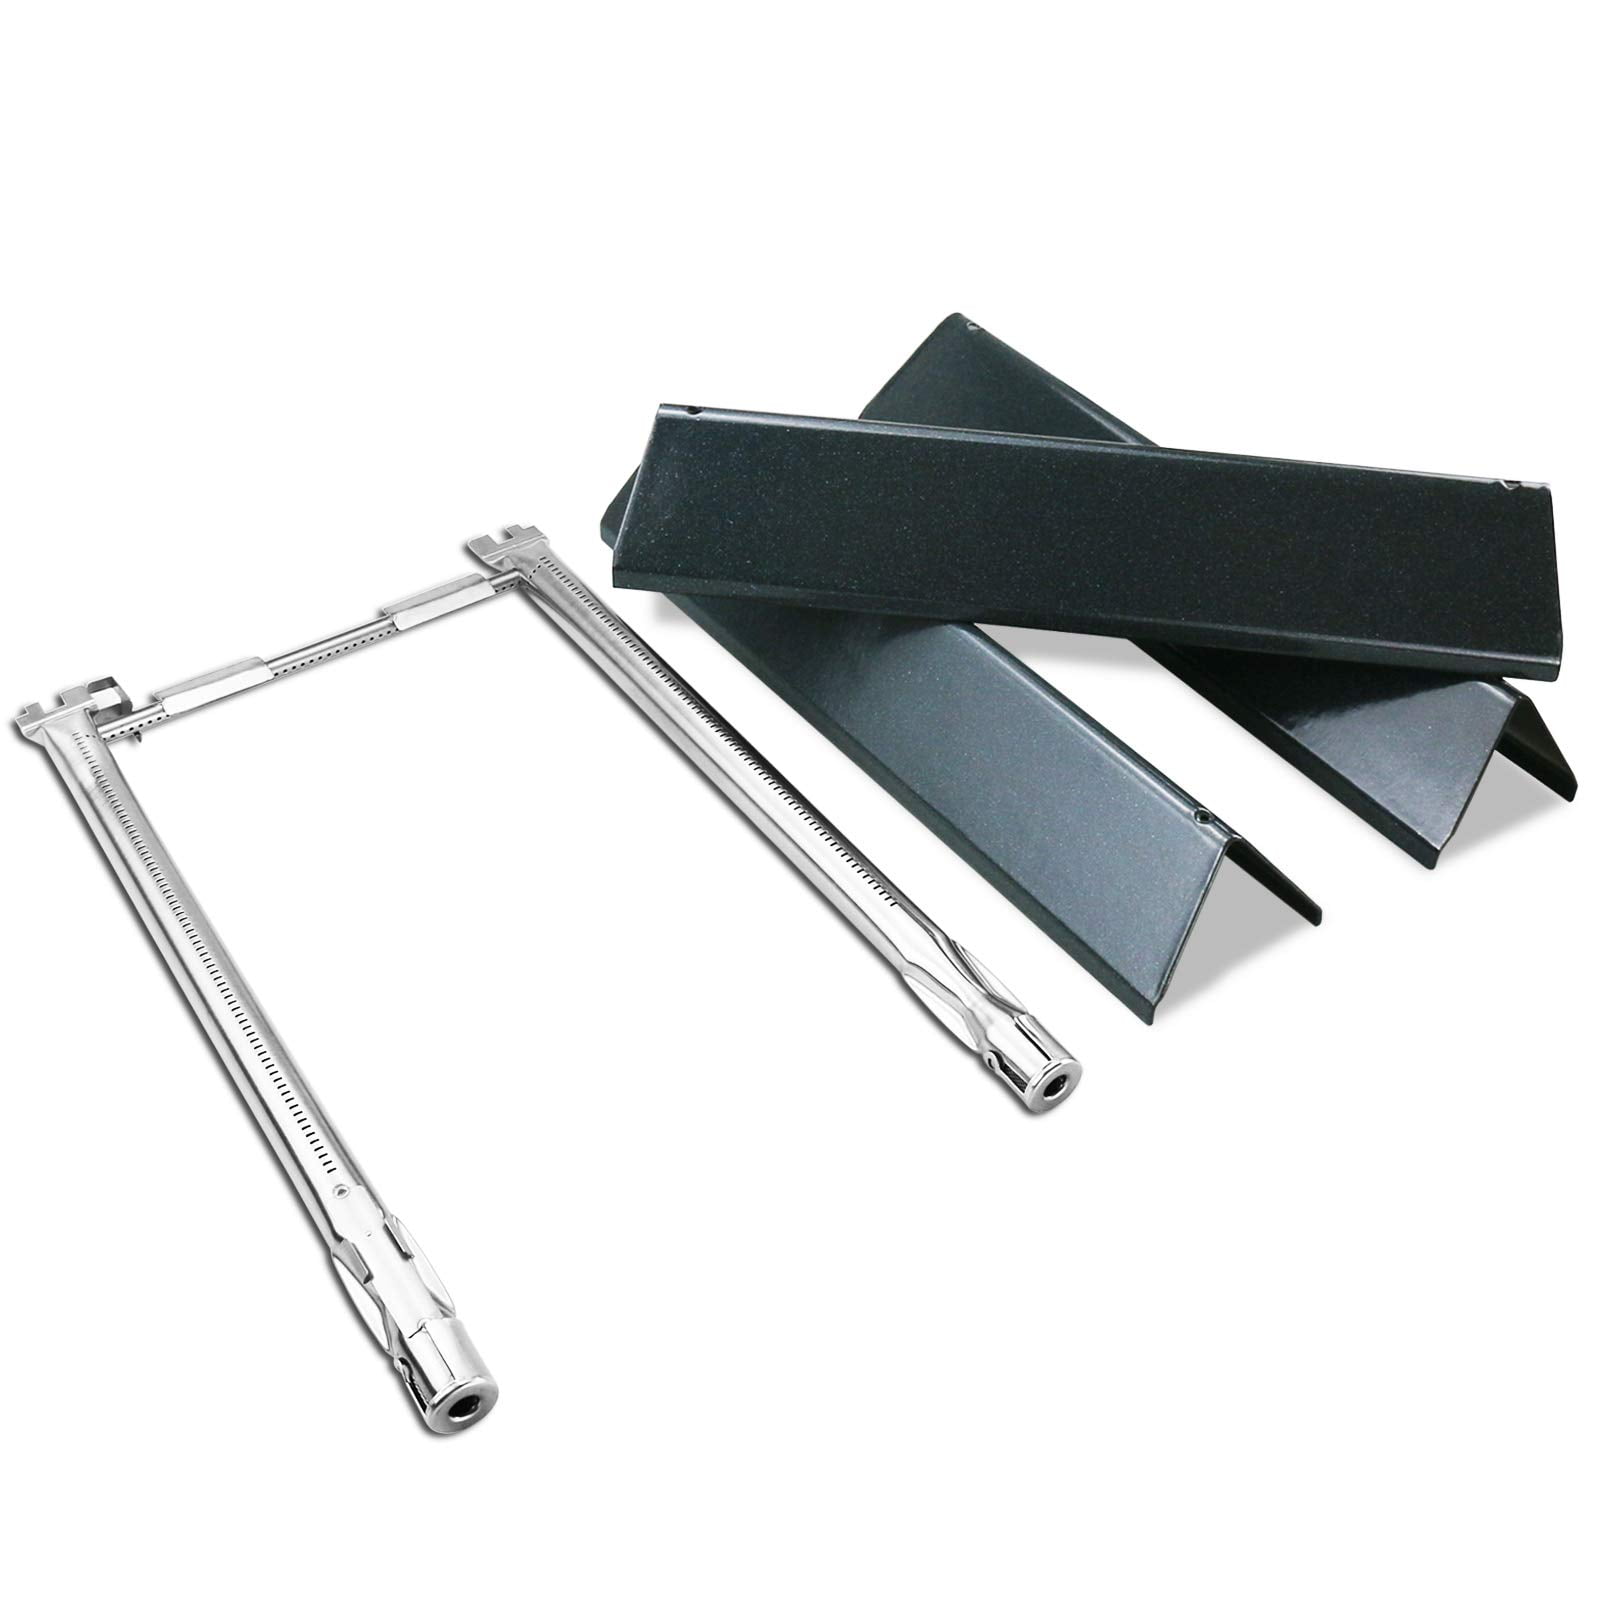 Grill Flavorizer Bars 15.3" Stainless Steel for Weber Spirit II E210 E220 3-Pack 